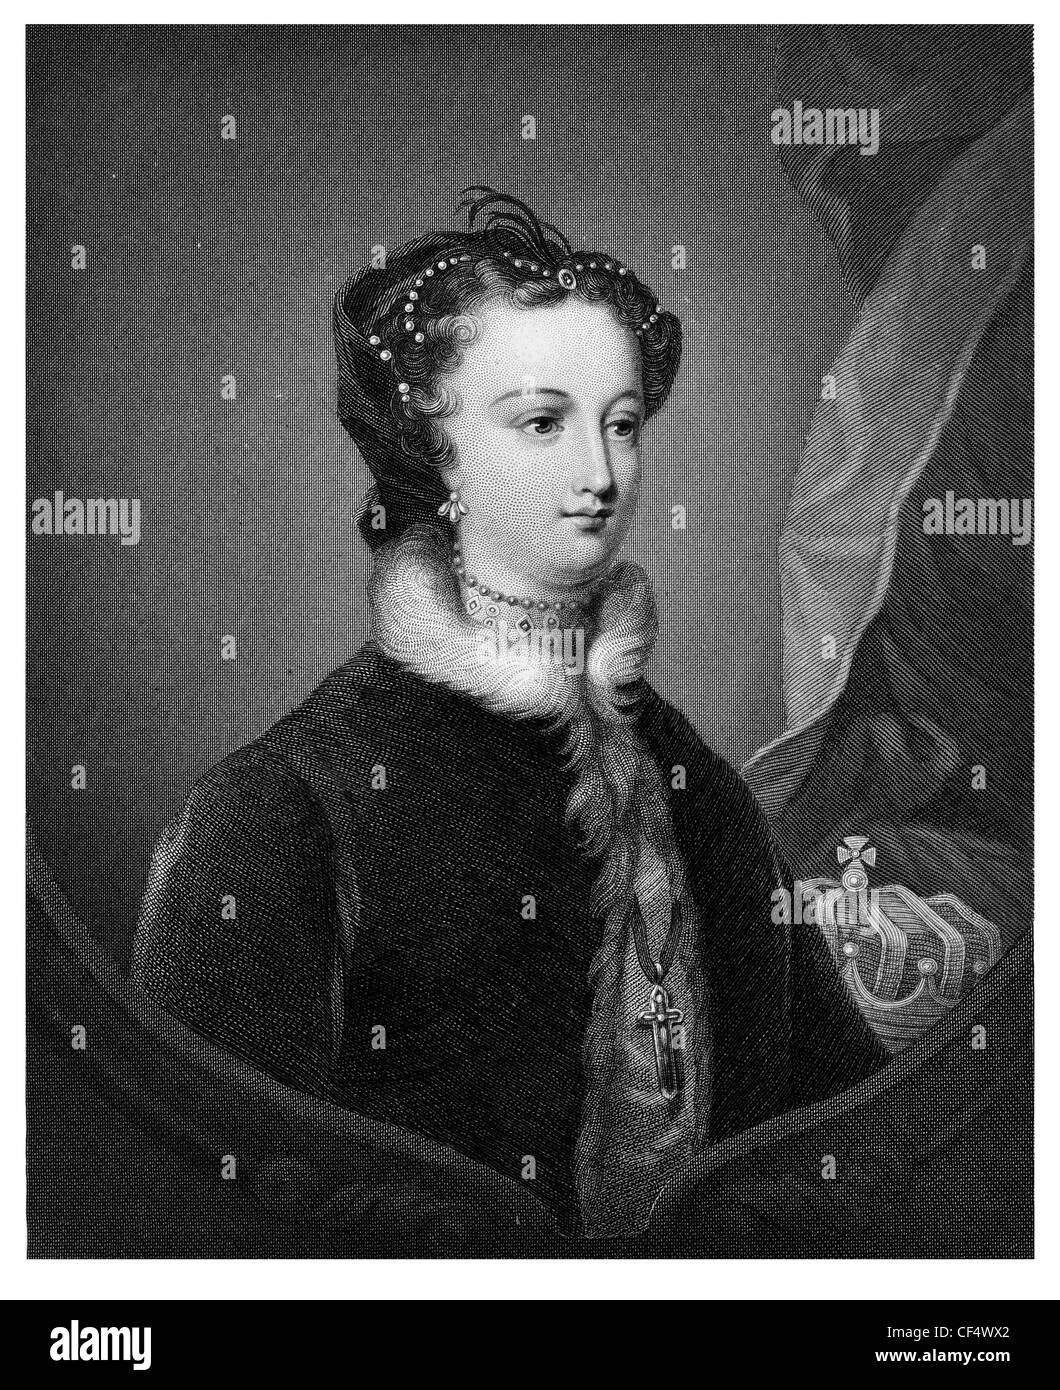 La regina Maria di Scozia 1542 1587 Maria Stuart regina di Scozia regnant ALTEZZA REALF imperatrice Crown Princess Foto Stock